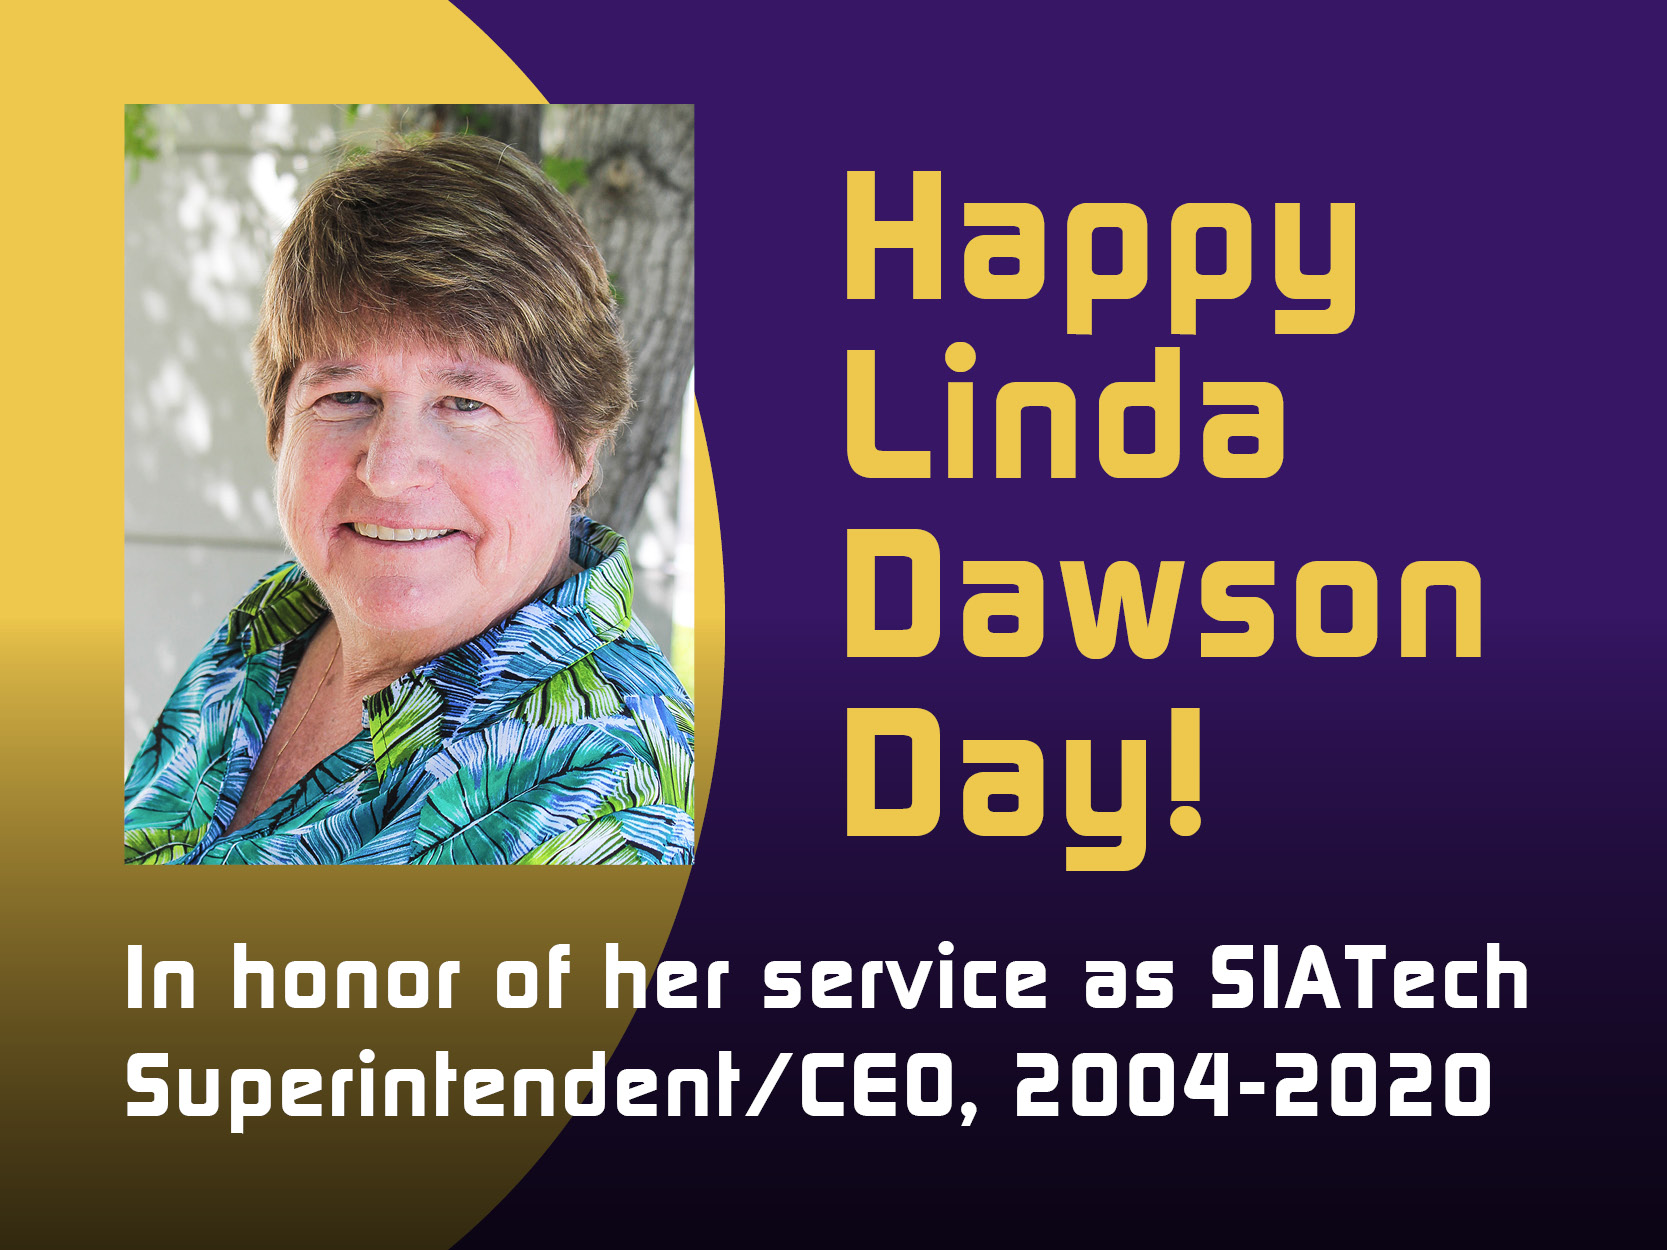 Dr. Linda Dawson Day